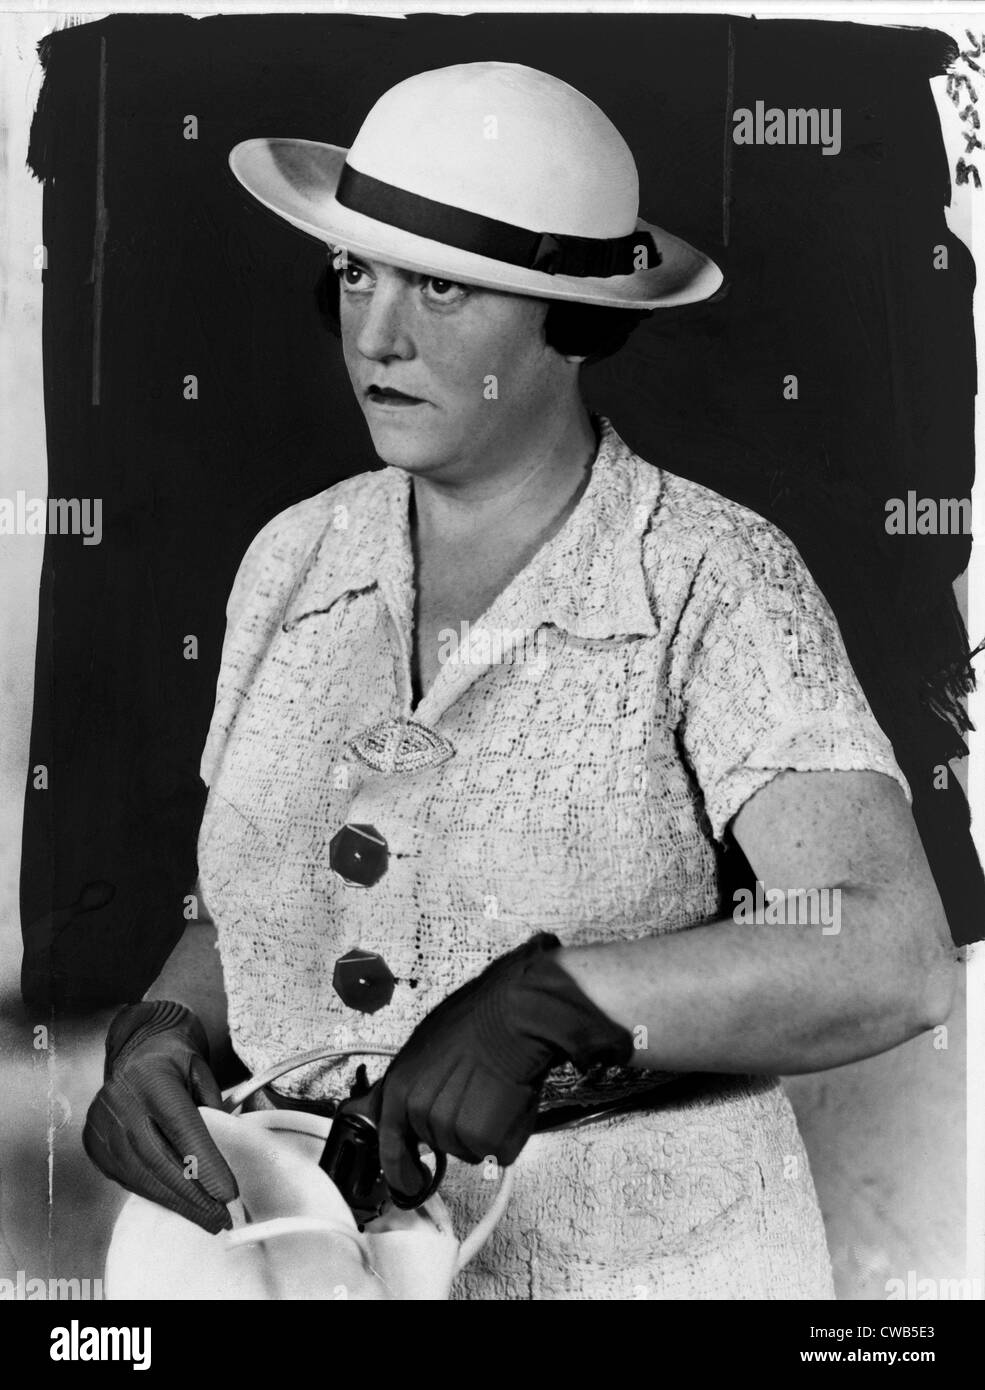 María Inés Shanley, detective de la ciudad de Nueva York, retrato de media longitud, mirando hacia la izquierda, tirando de una pistola de su bolso Foto de stock